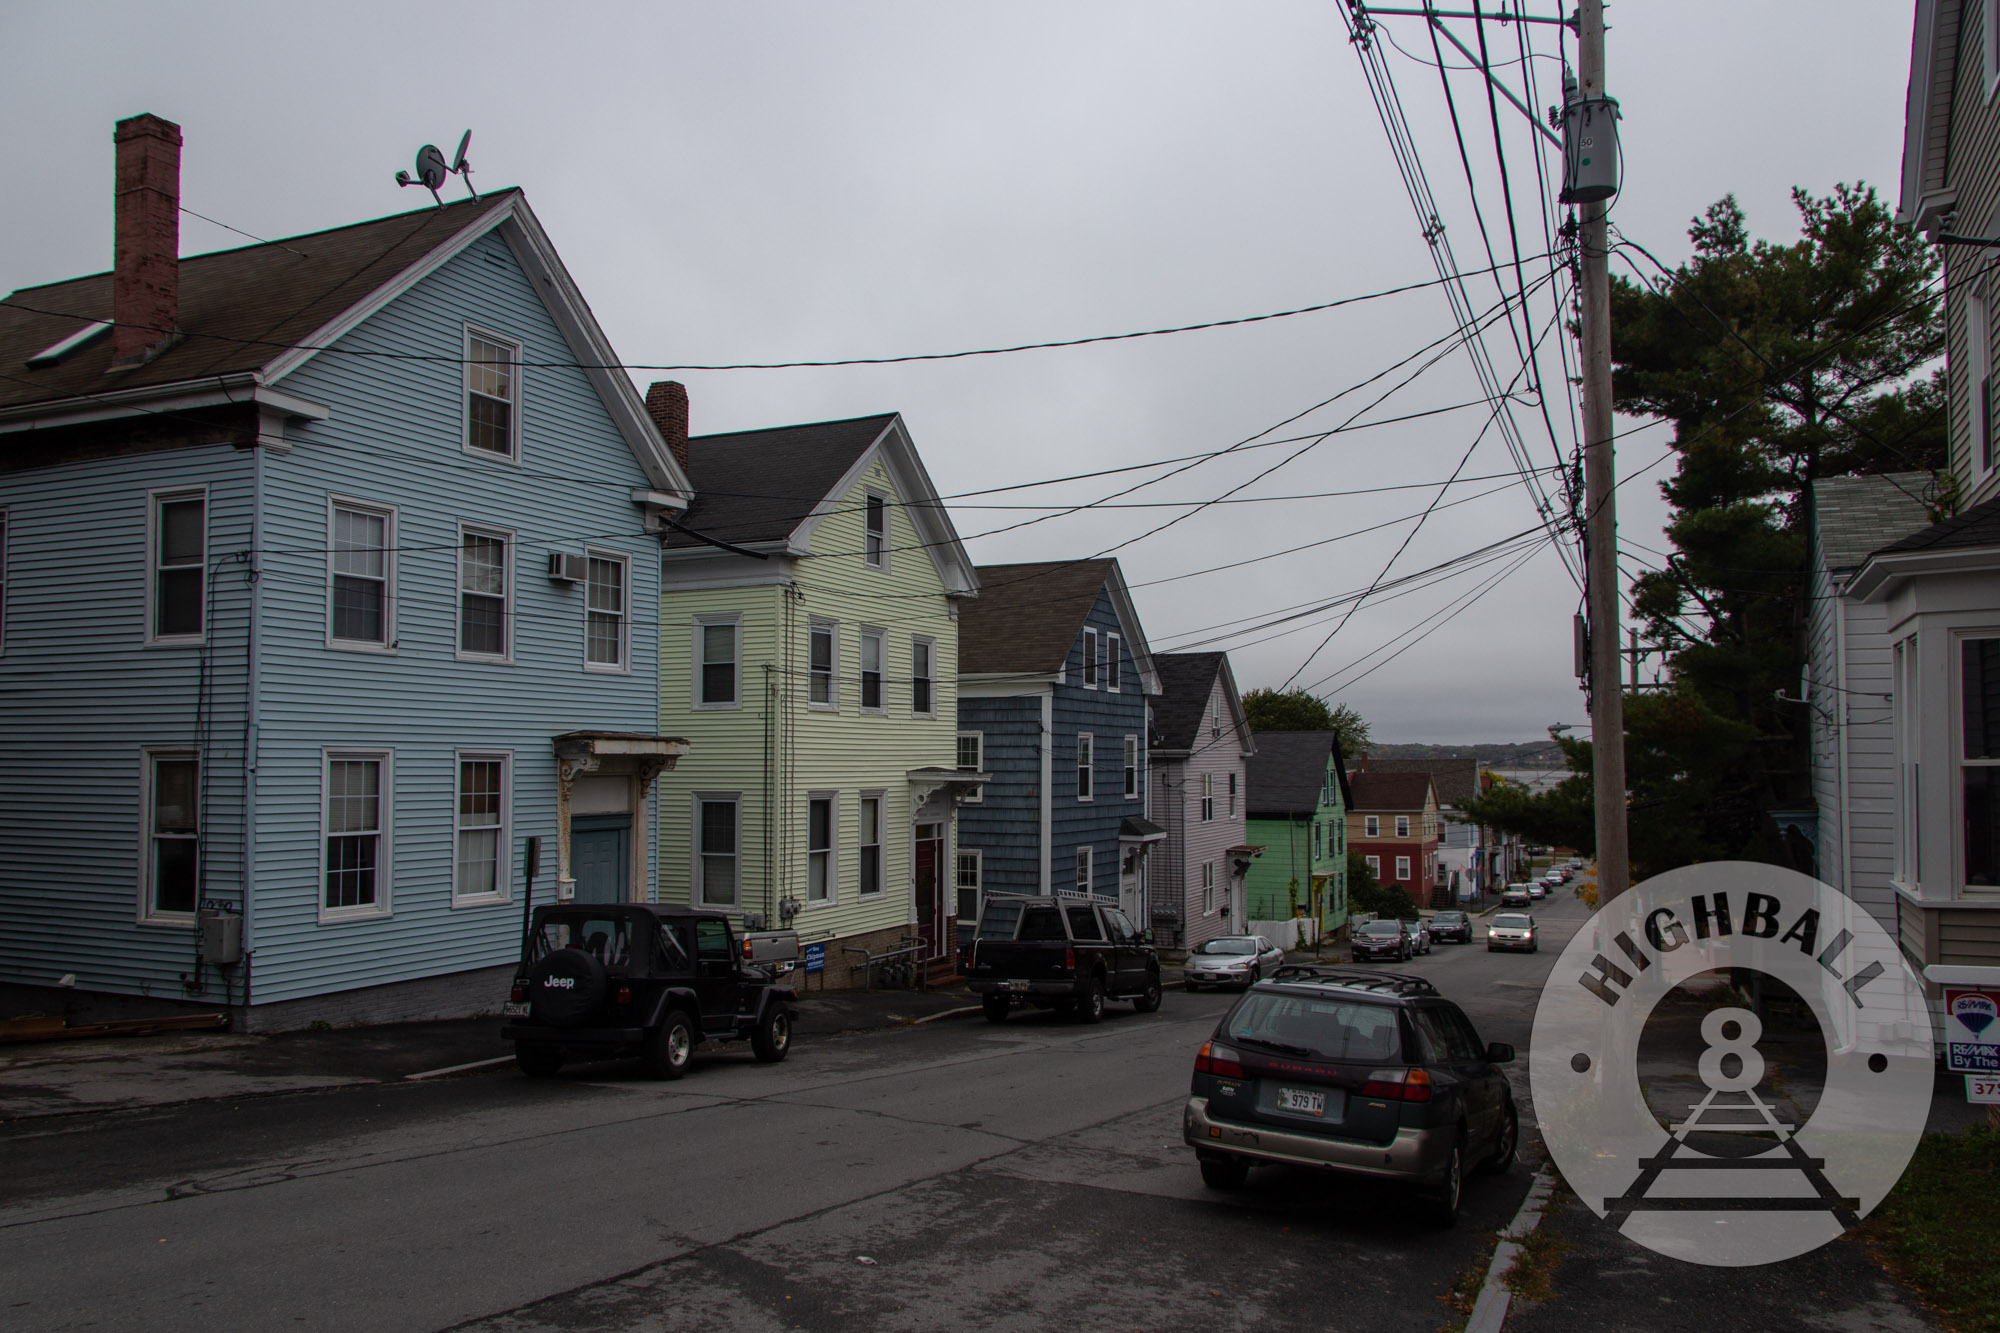 Houses in the East End neighborhood of Portland, Maine, USA, 2014.